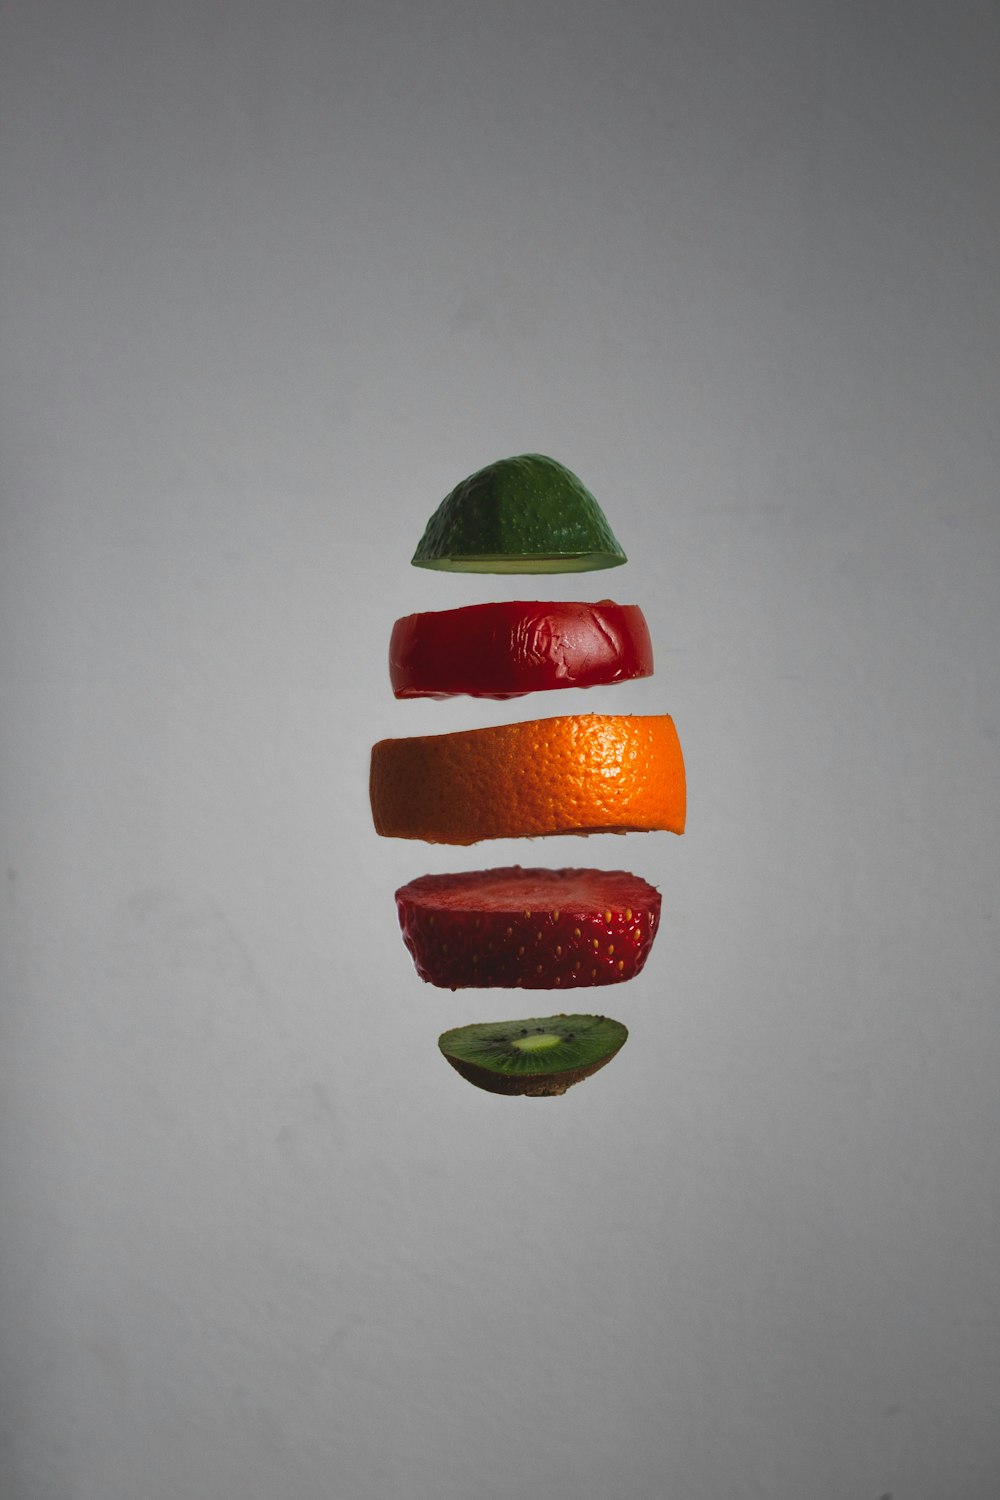 an orange, apple, and kiwi cut in half